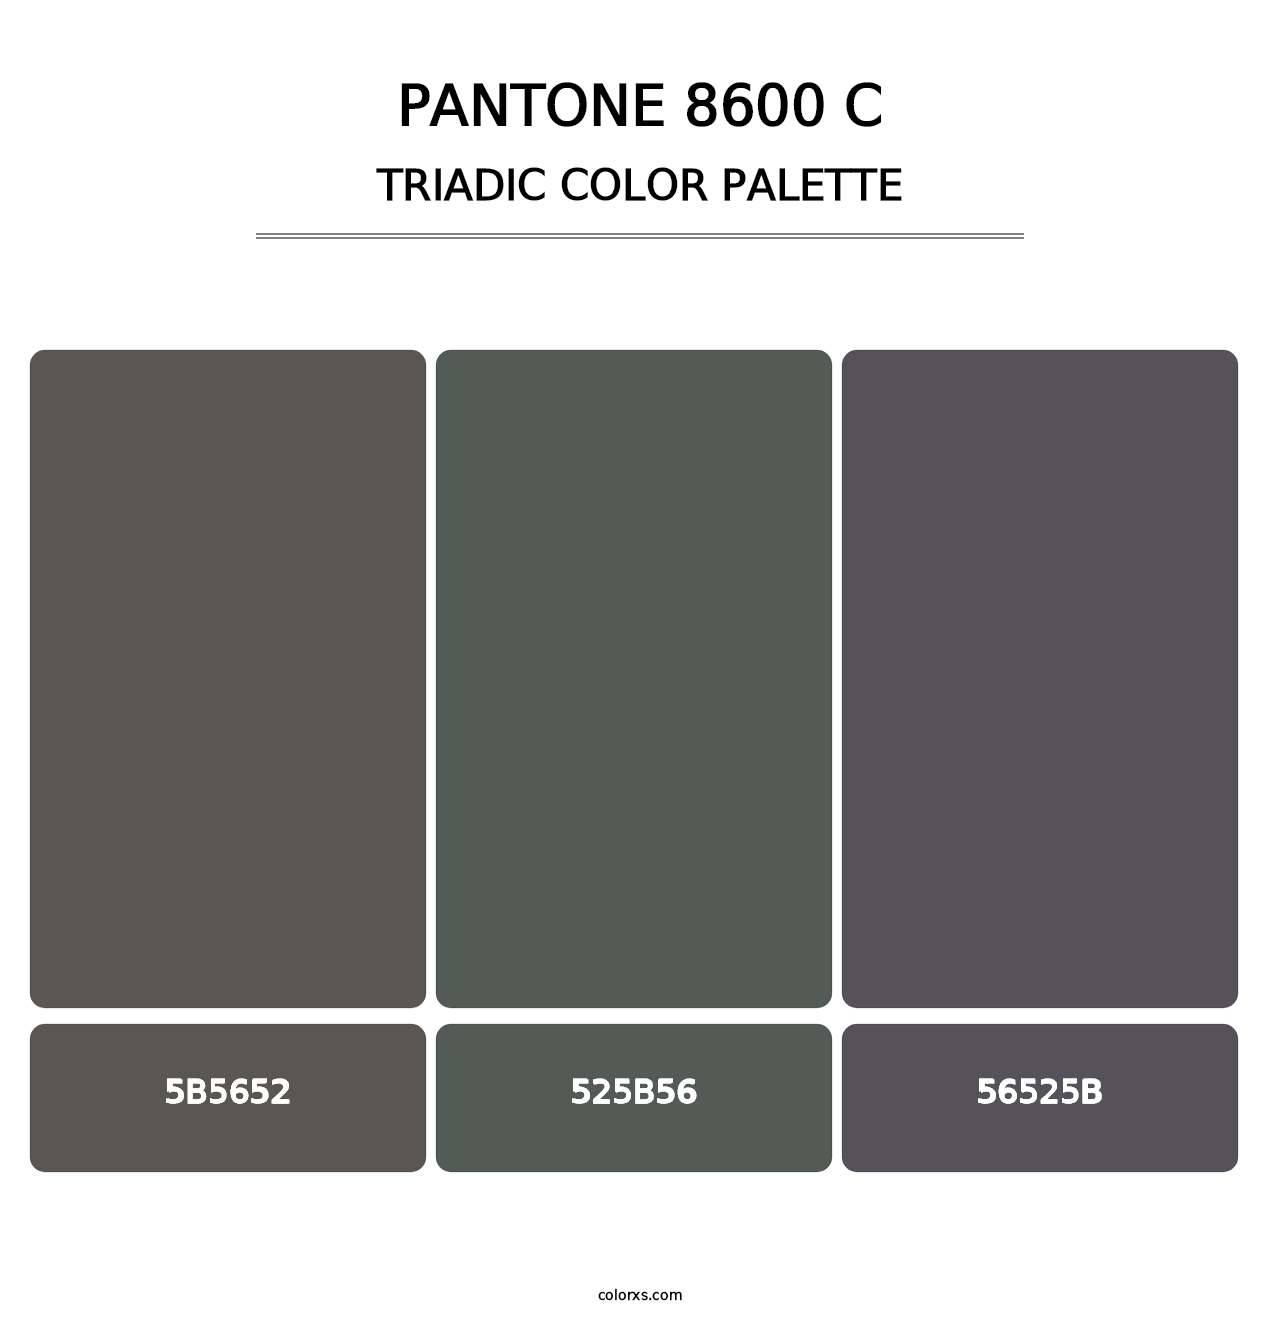 PANTONE 8600 C - Triadic Color Palette